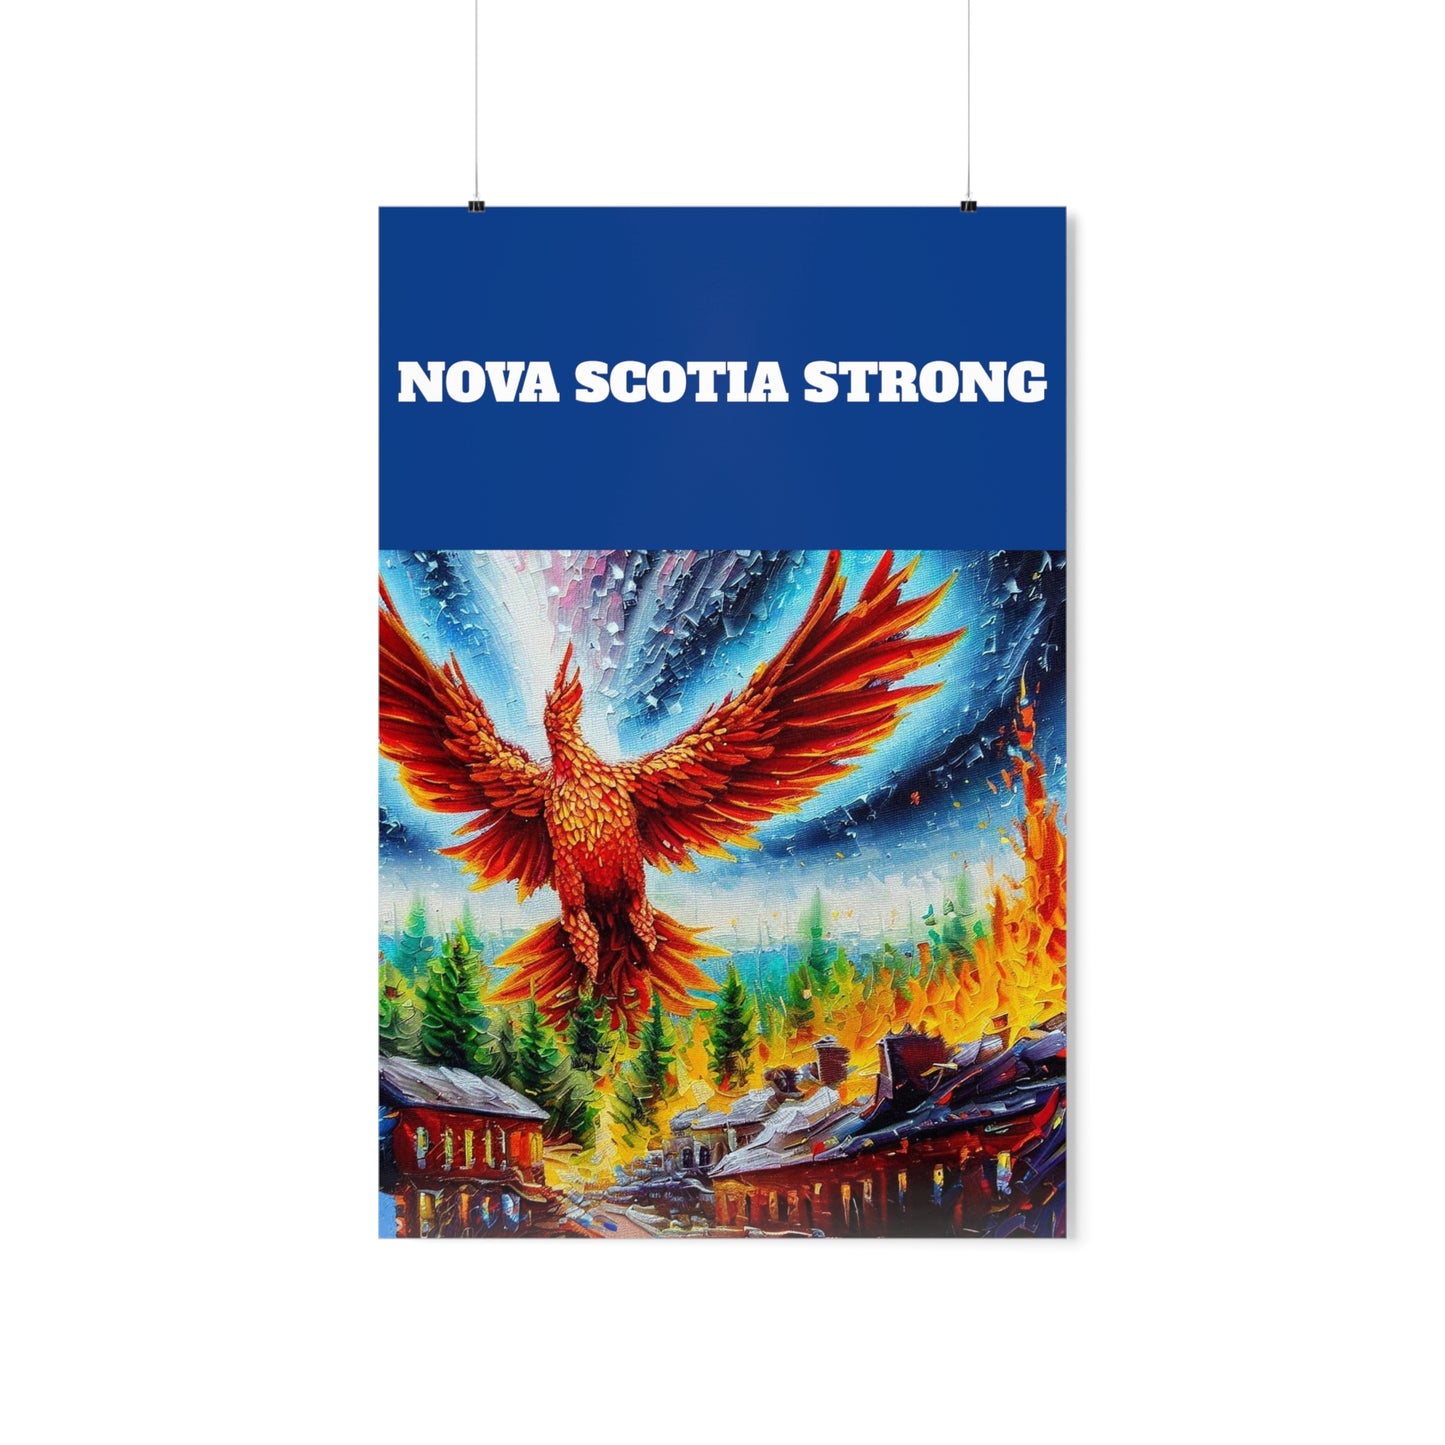 Unique Vintage Wall Art Poster - Premium Matte Vertical Vintage Nova Scotia Strong Phoenix Rising Poster